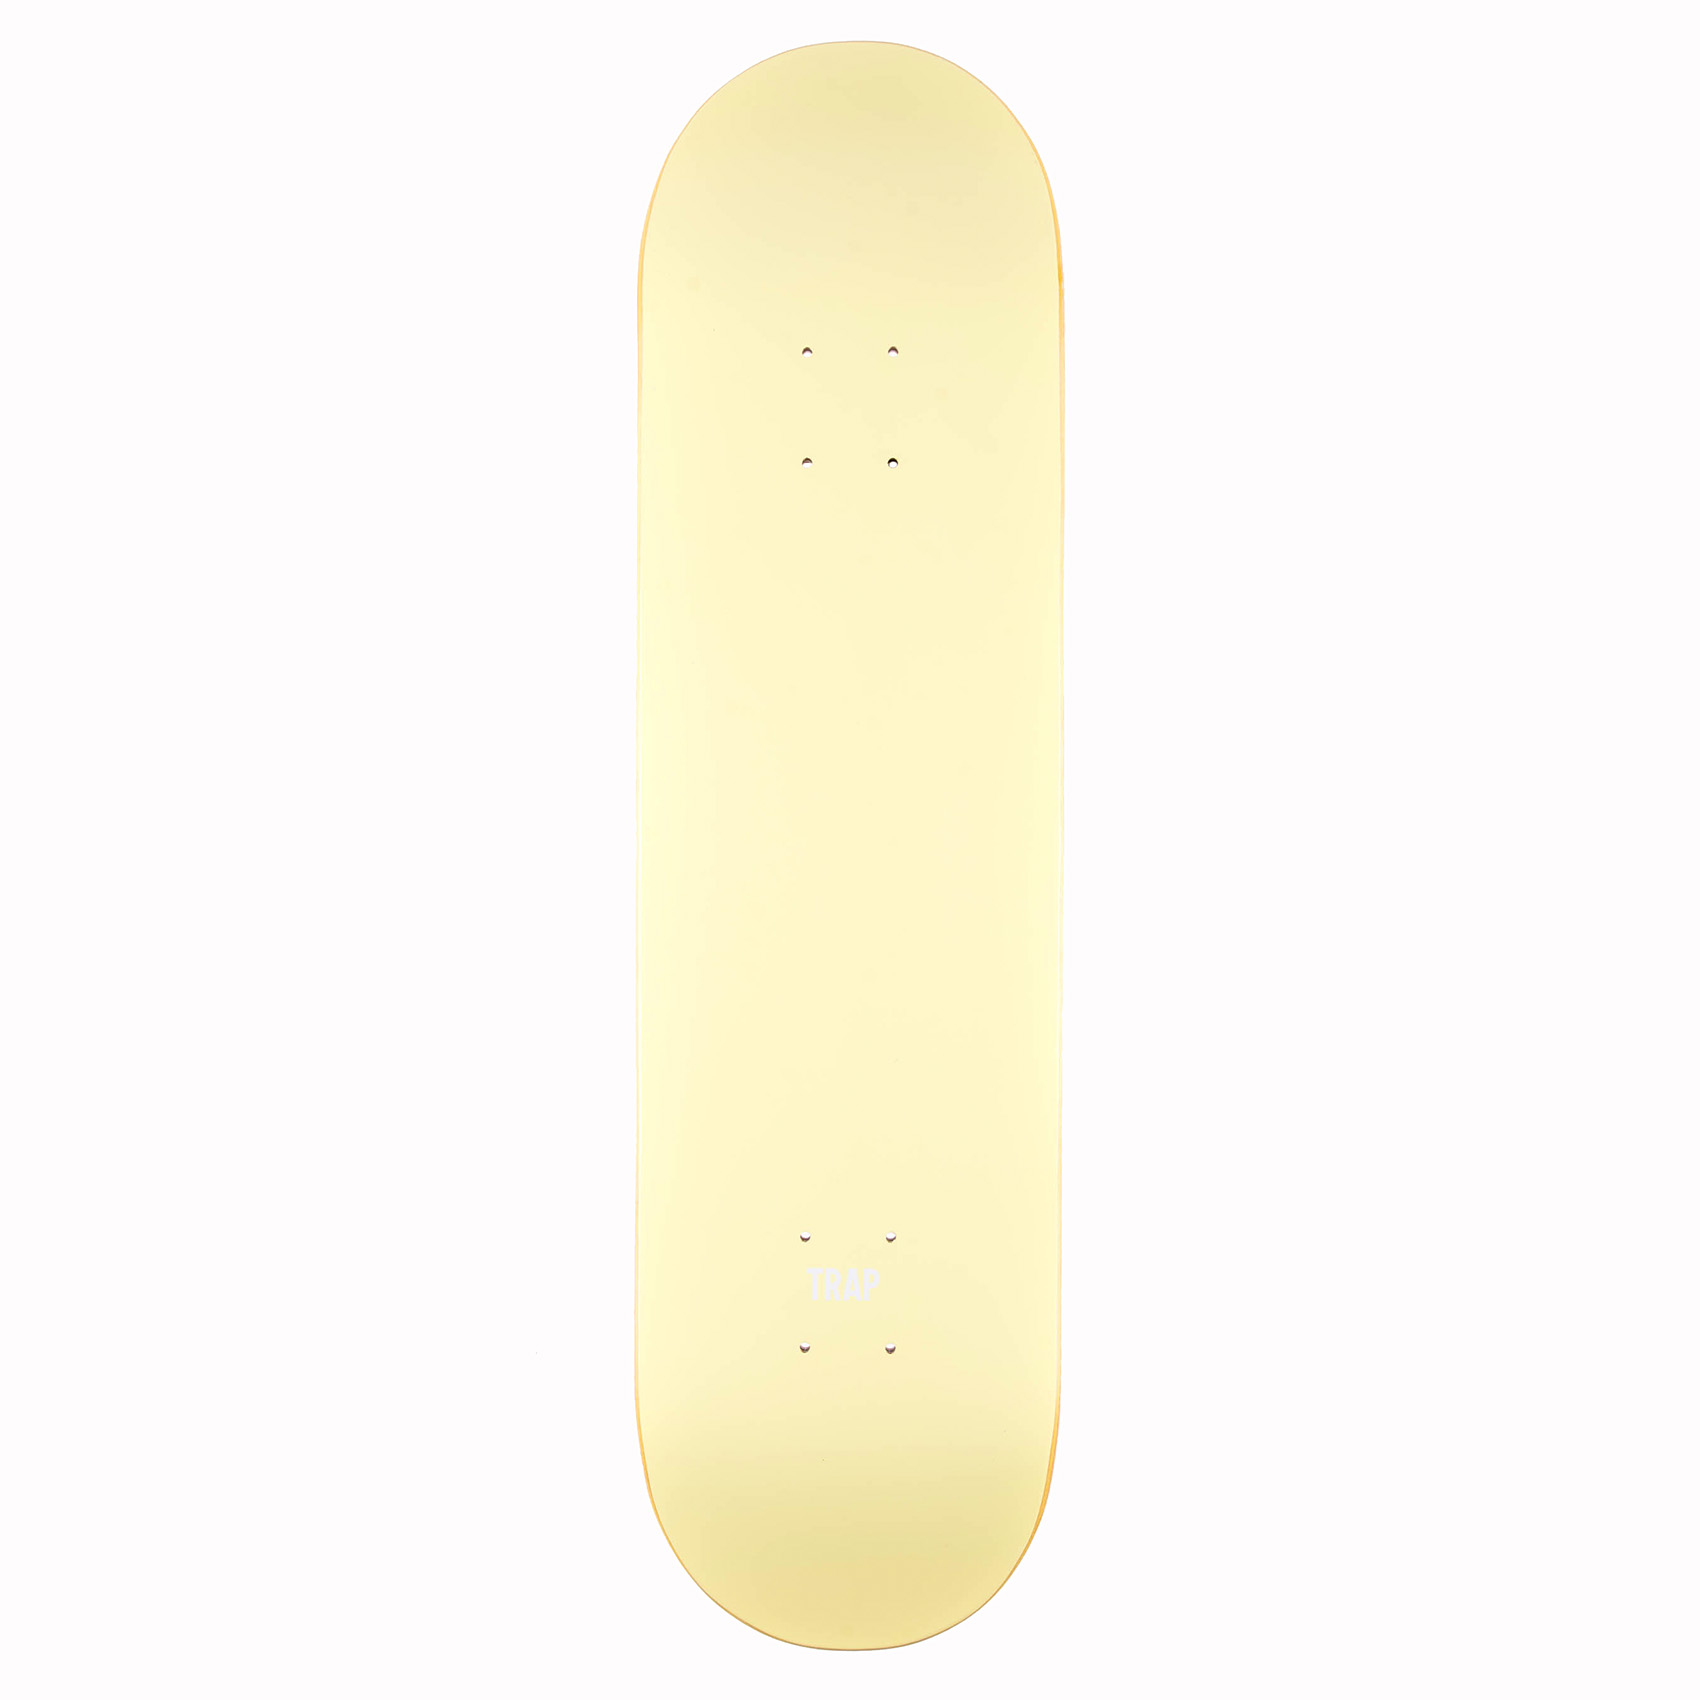 Trap Skateboard Deck Monochrome Series 7.75" (yellow)